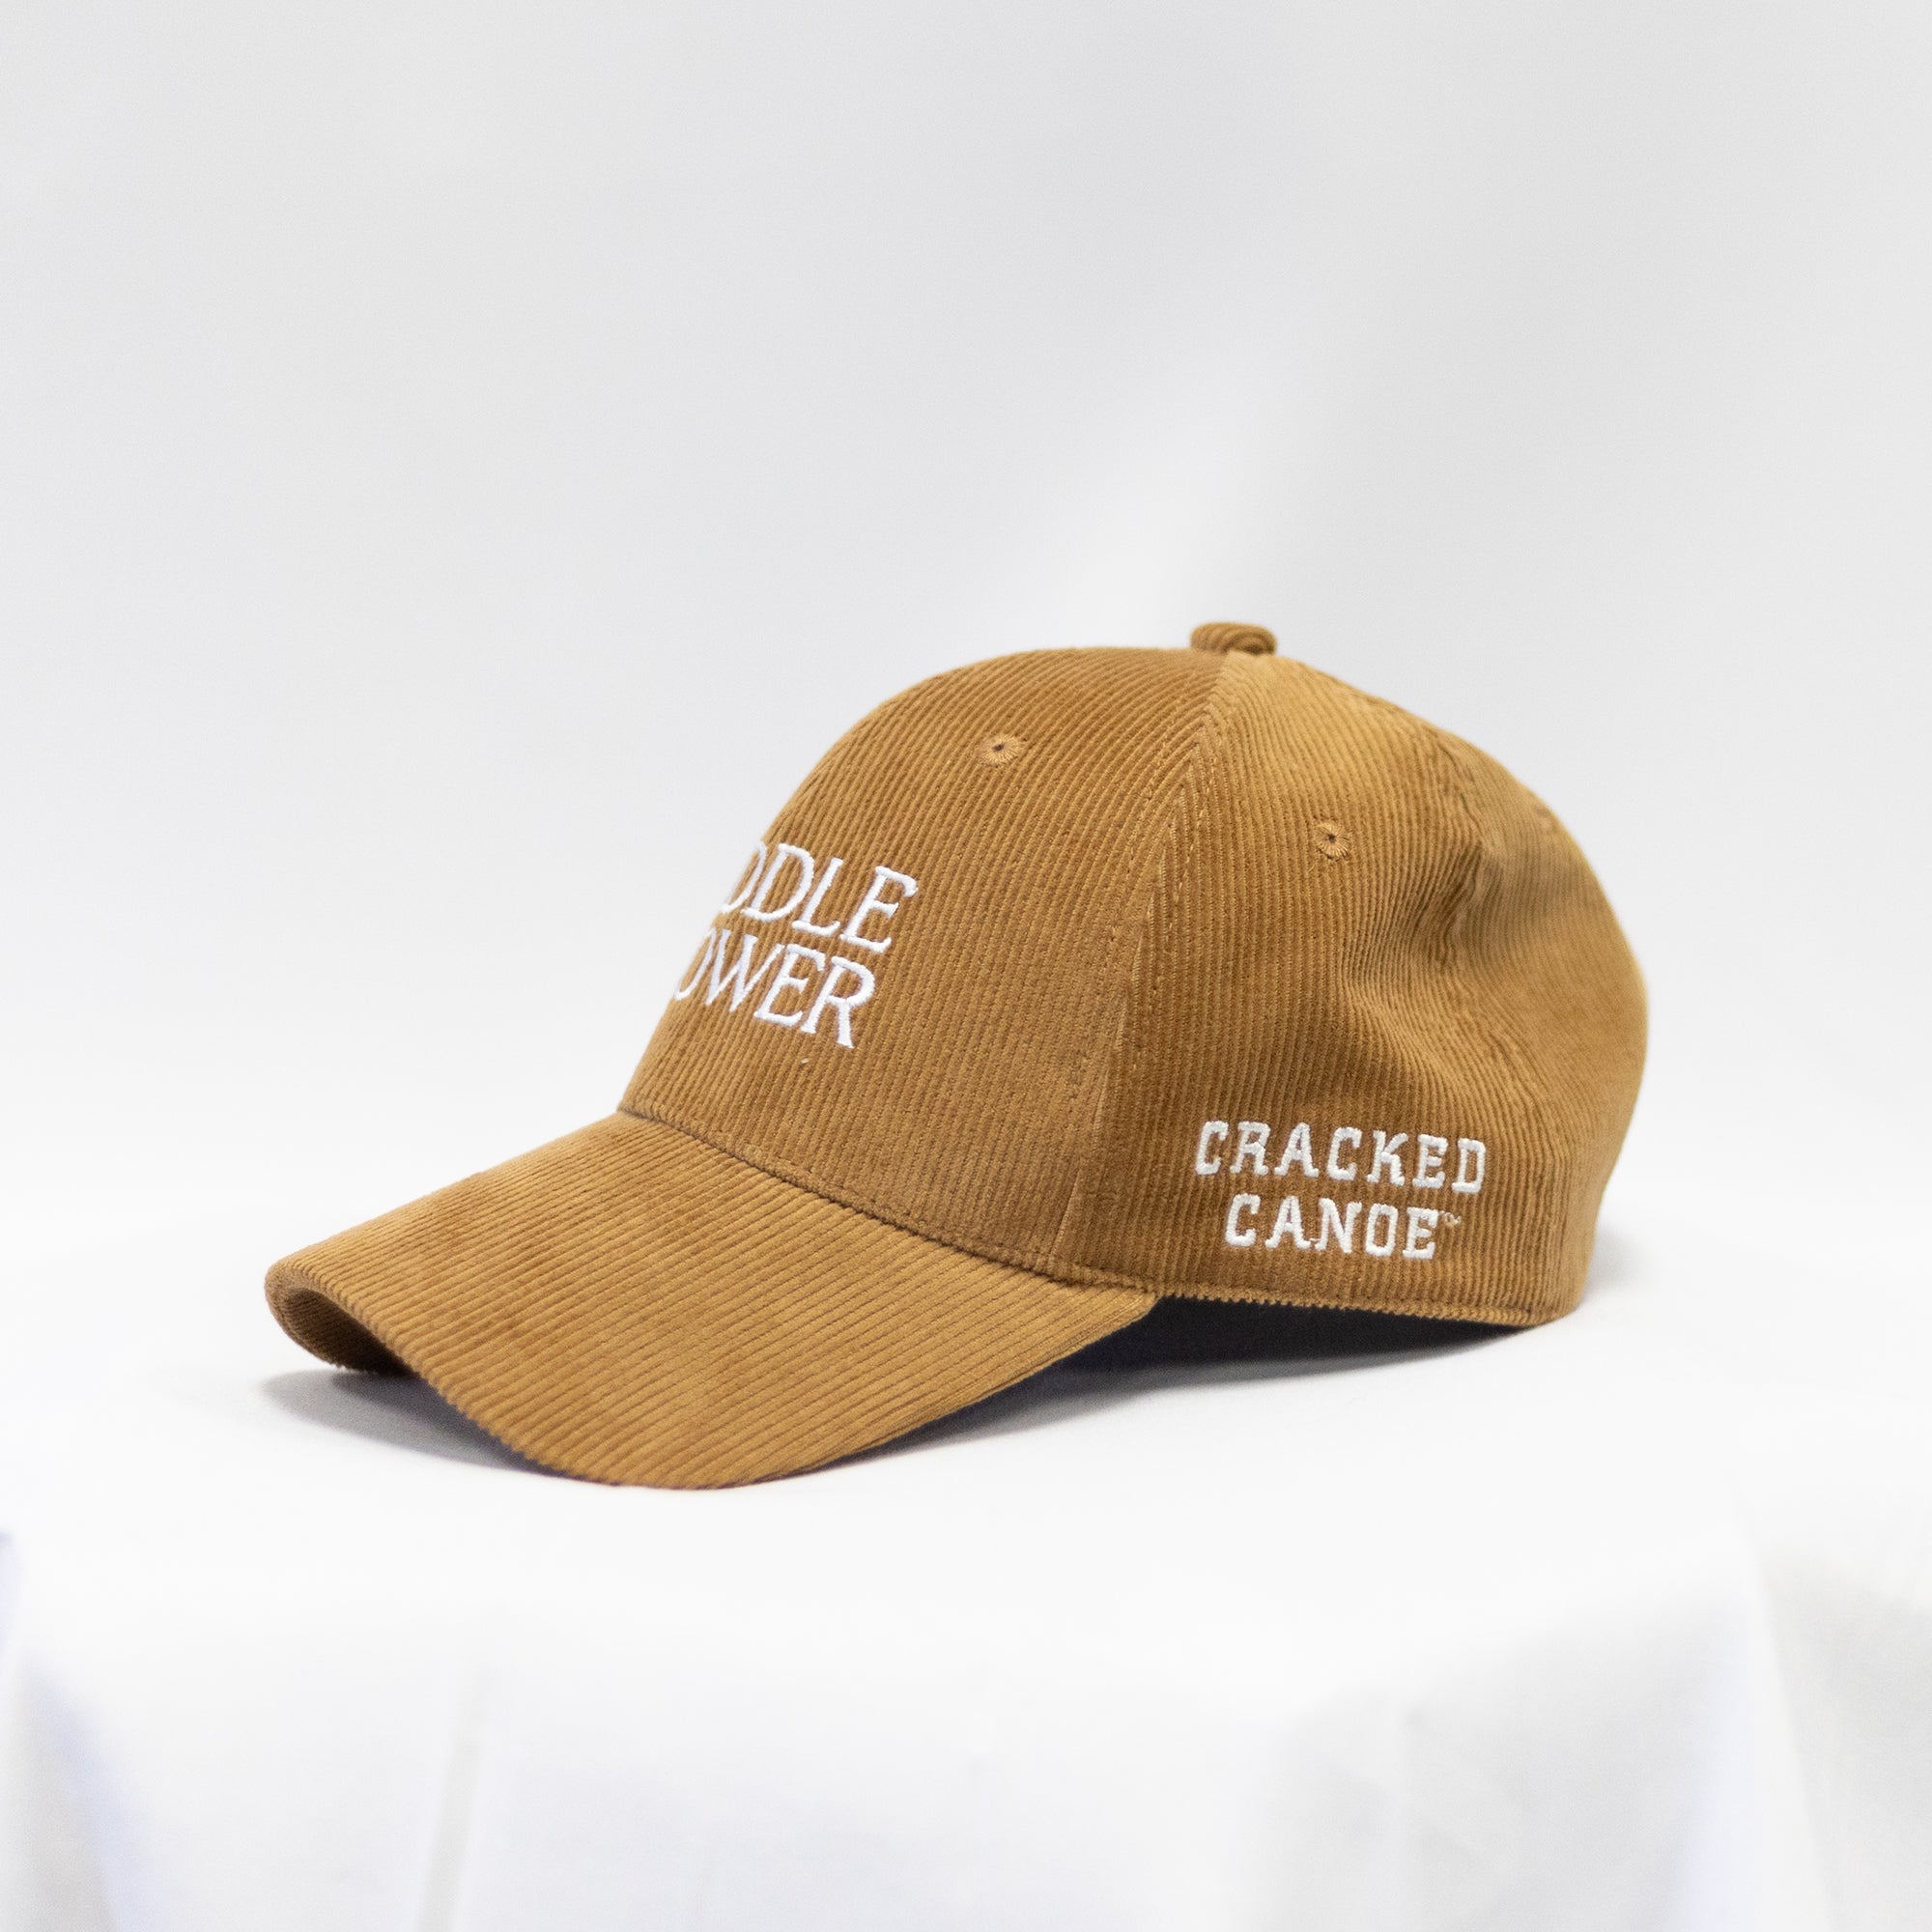 Cracked Canoe Paddle Slower Hat